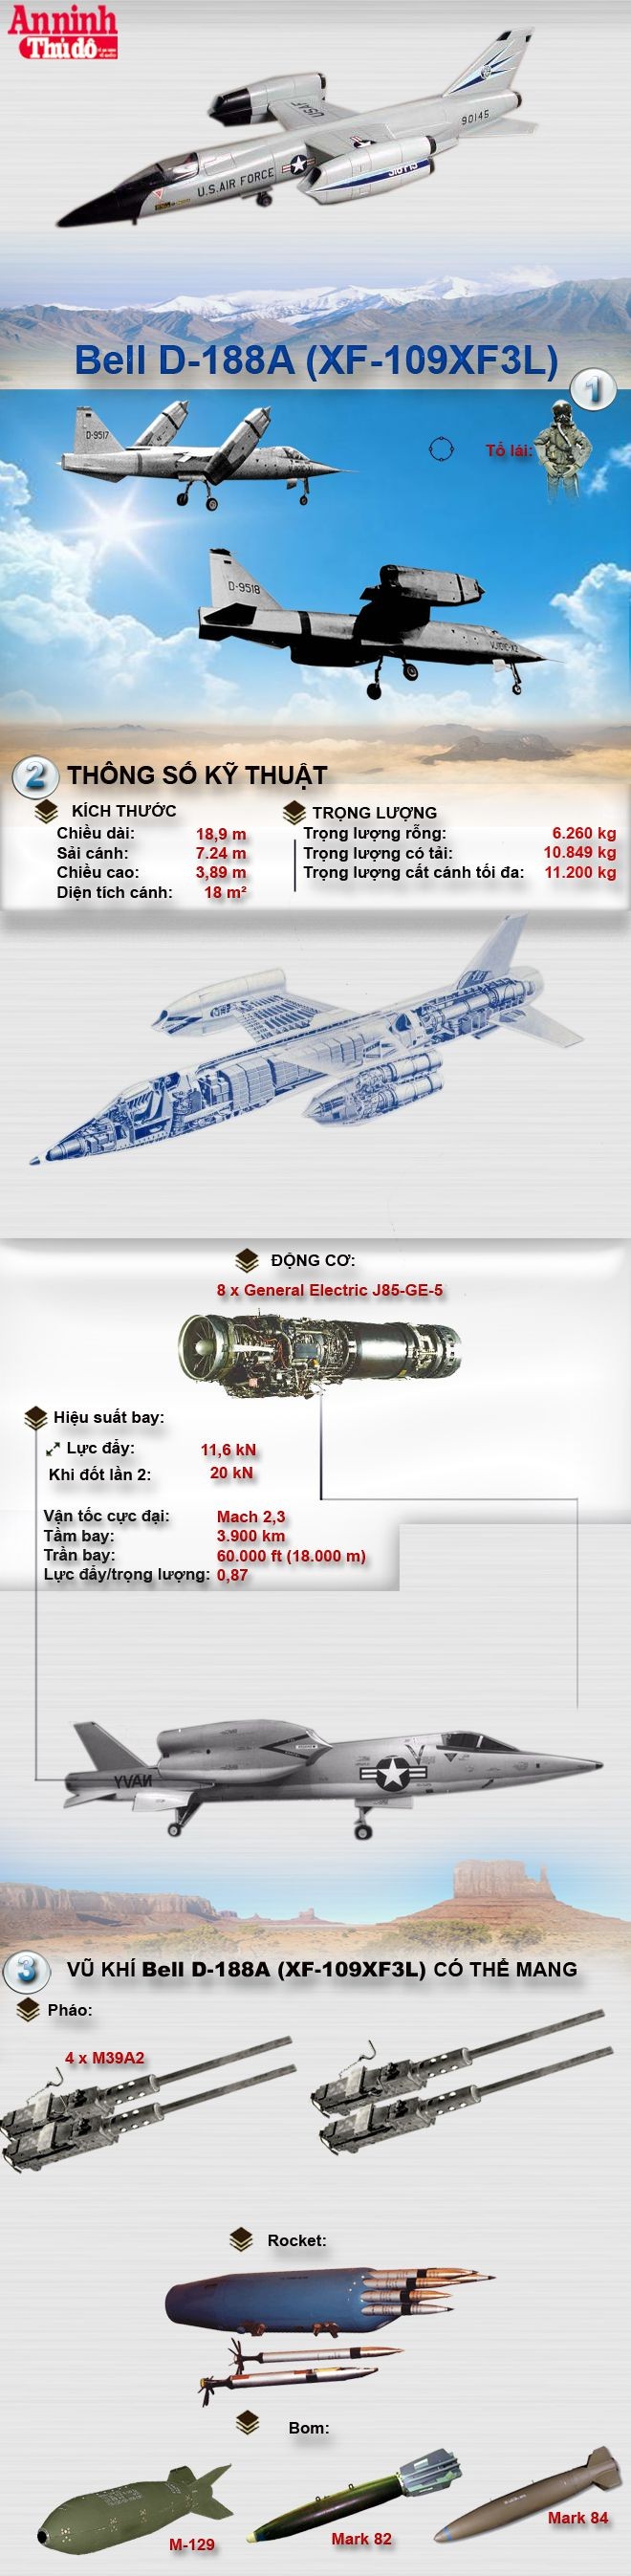 [Infographic] Bell D-188A (XF-109XF3L) - Siêu tiêm kích động cơ xoay của Mỹ